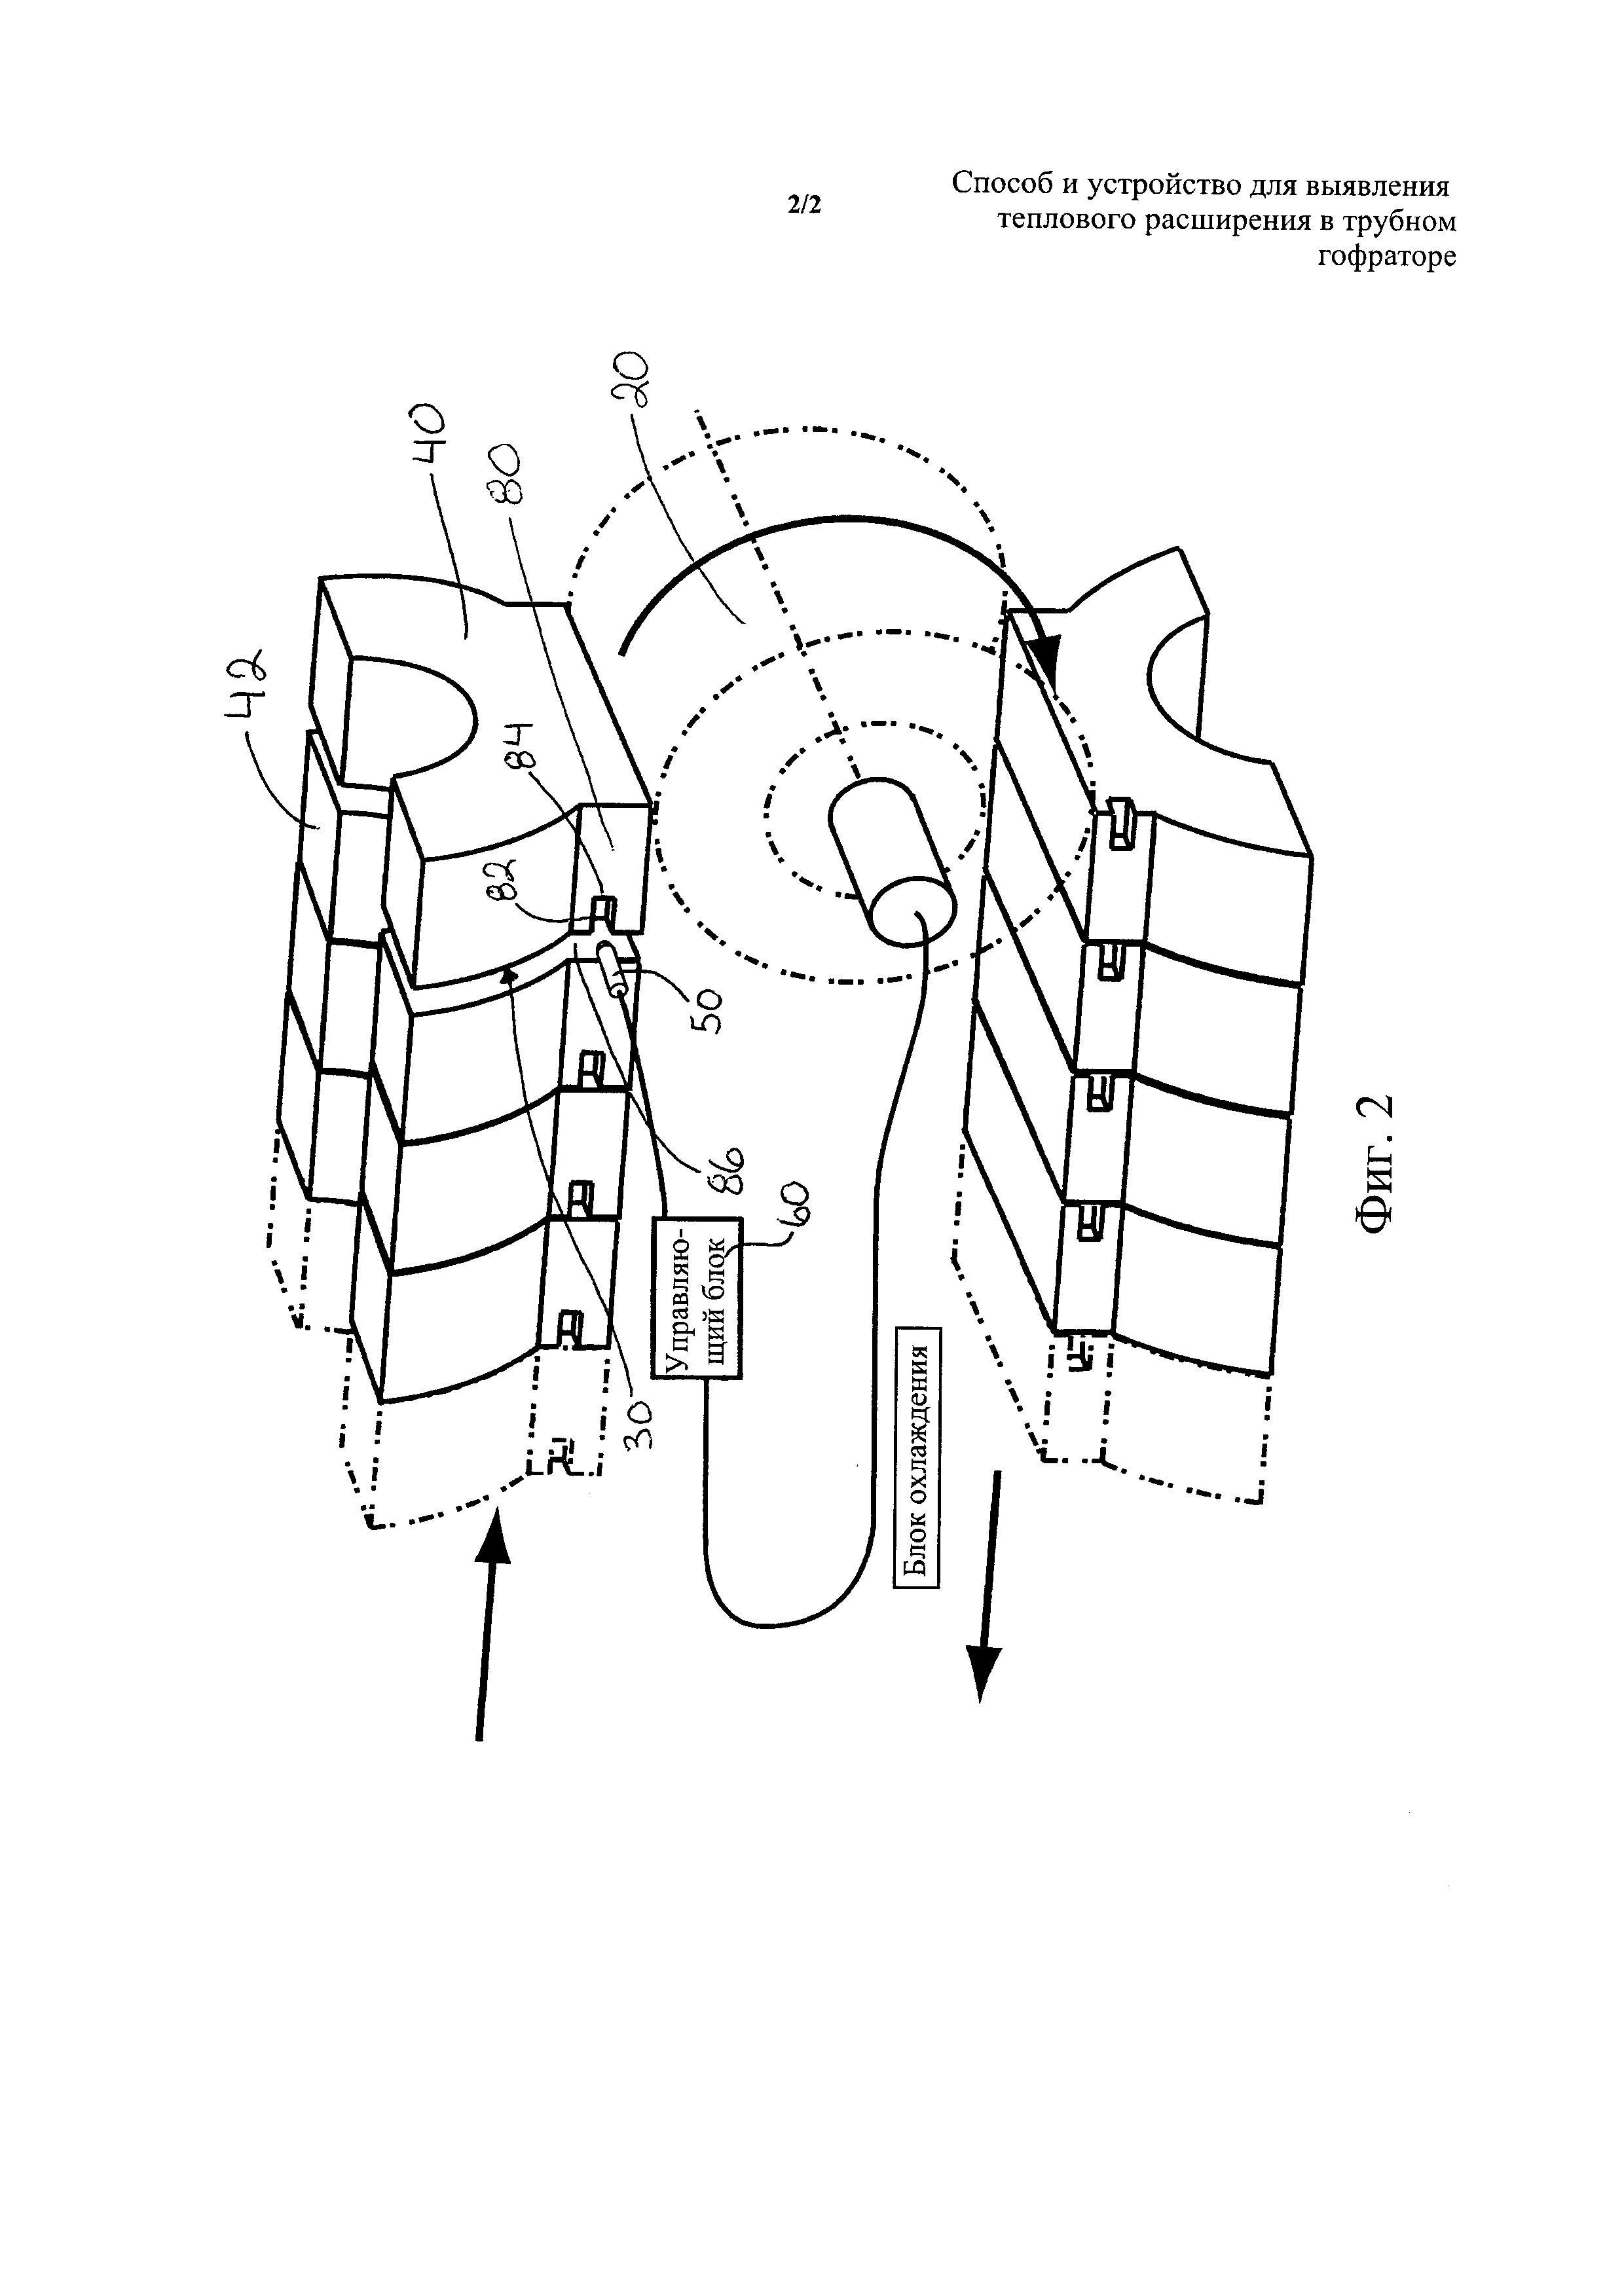 Способ и устройство для выявления теплового расширения в трубном гофраторе